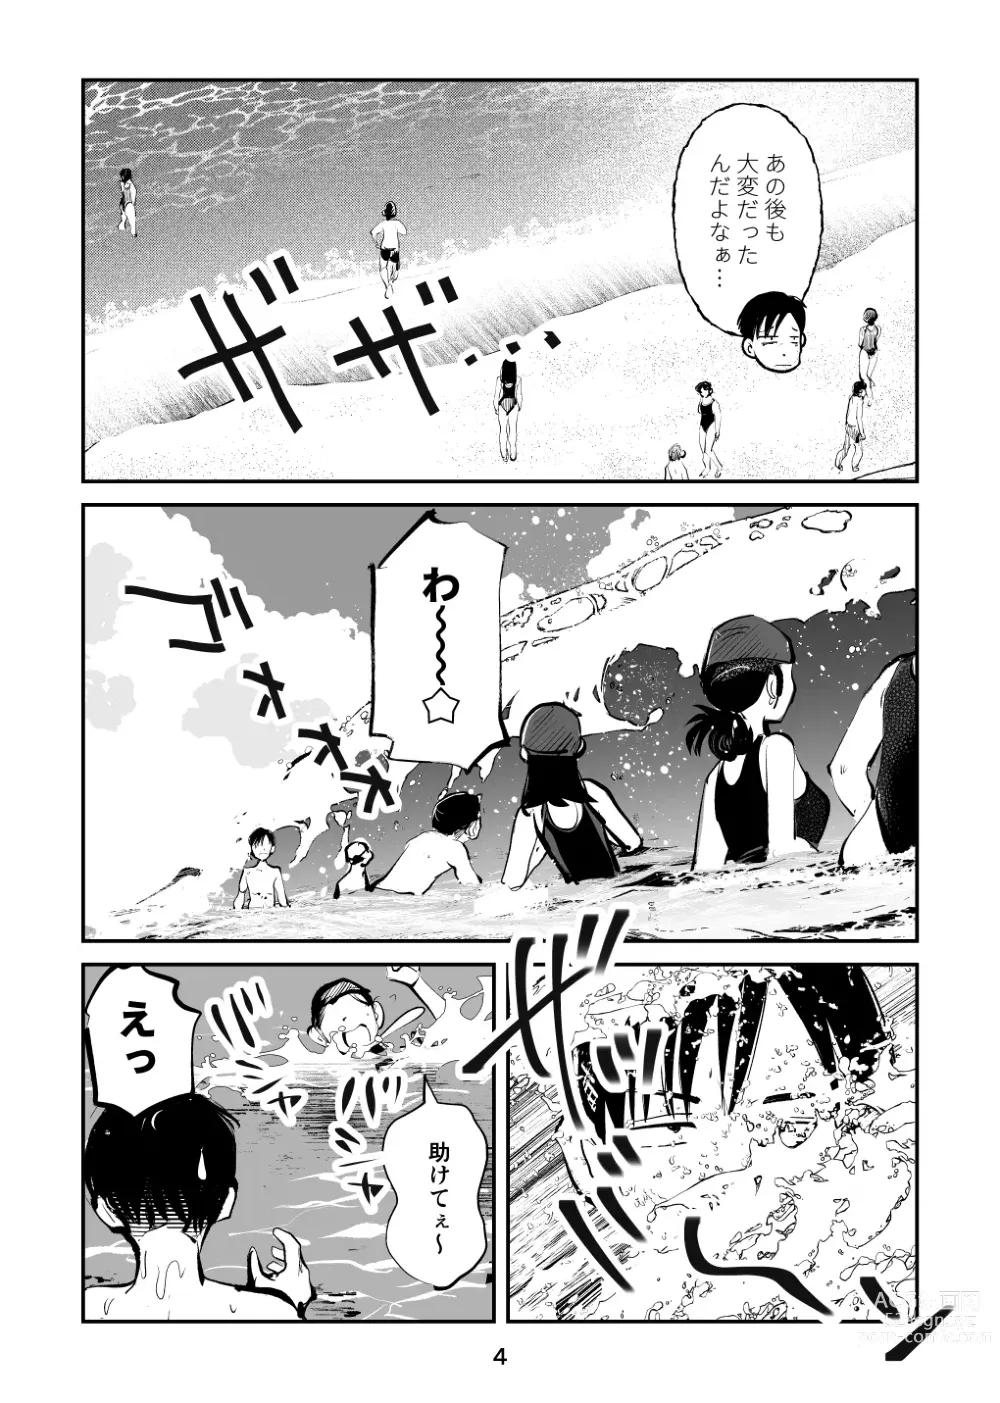 Page 4 of doujinshi Chinpo Shiikukakari 7